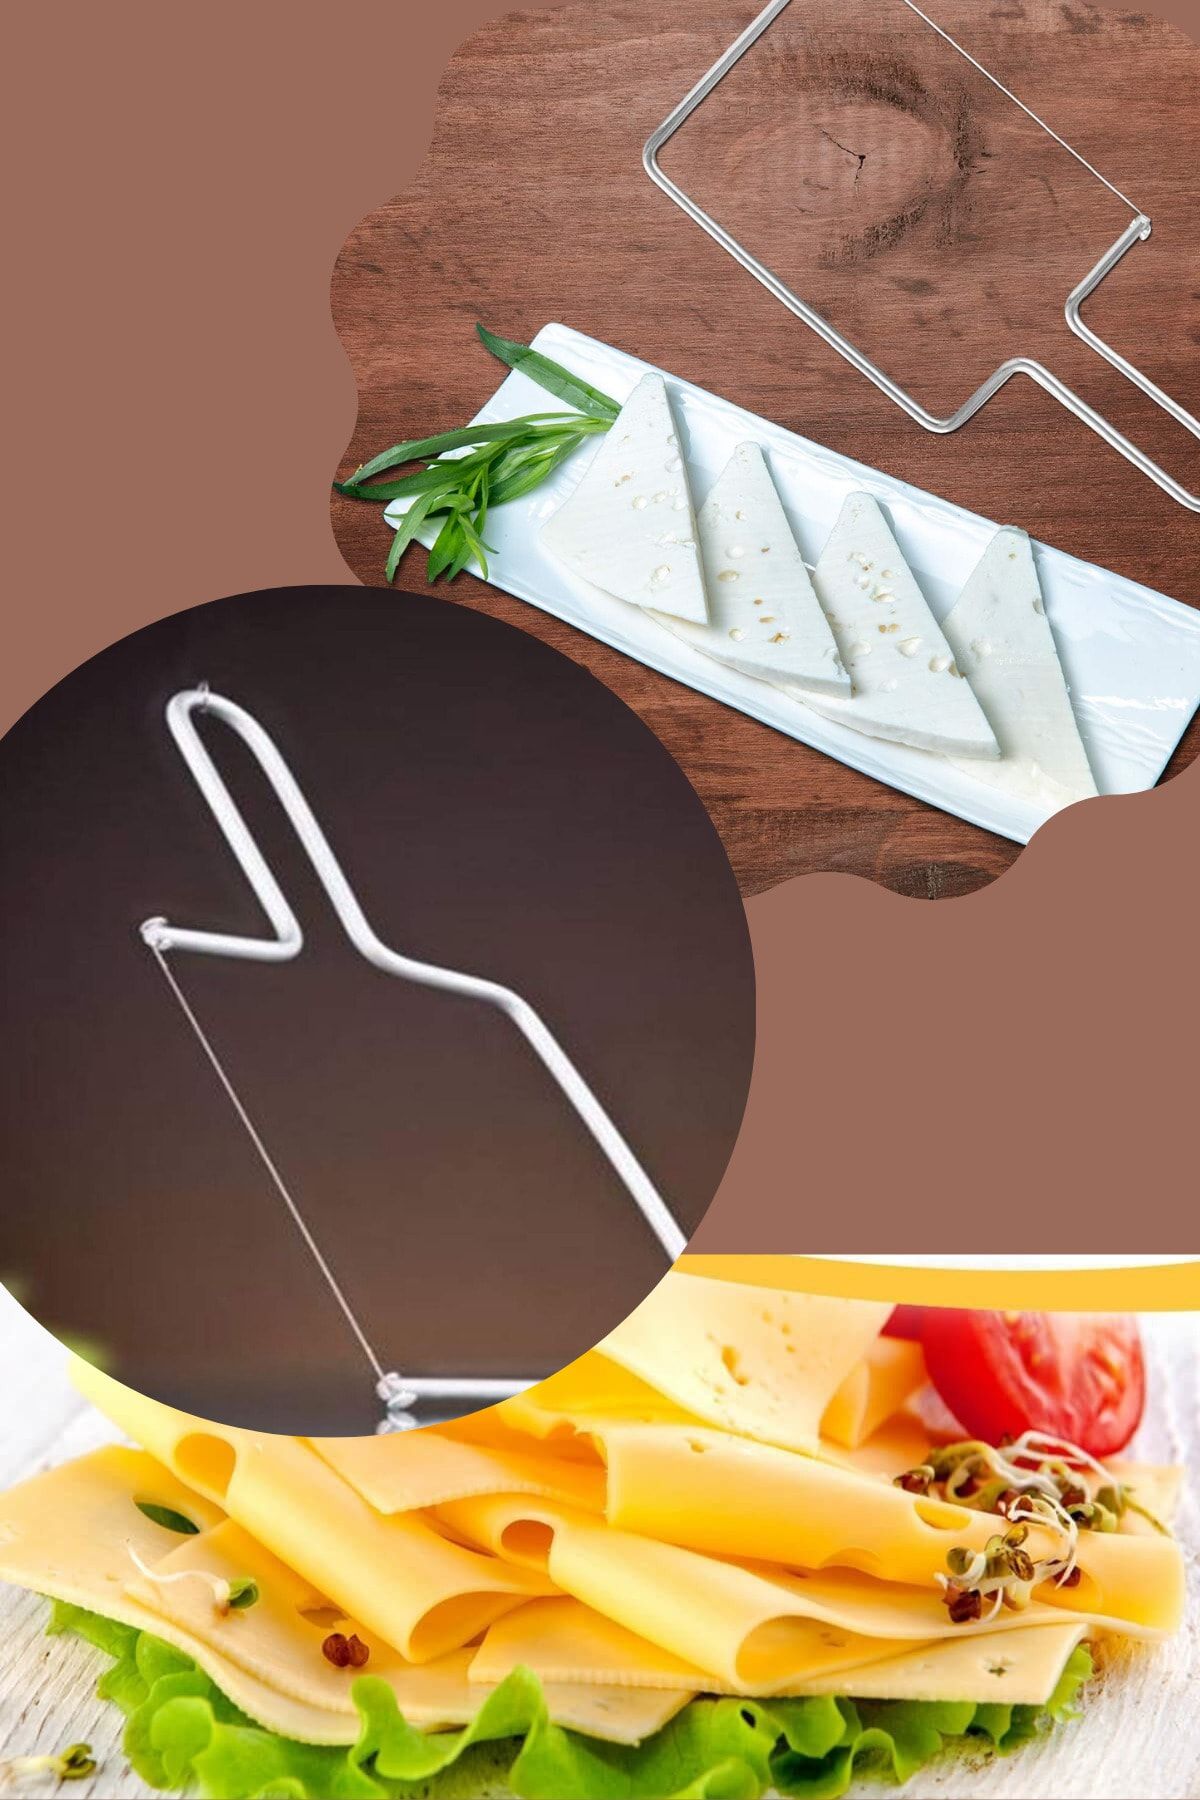 Ersamica Paslanmaz Peynir Sebze Meyve Dilimleyici Yedek Kesme Teli